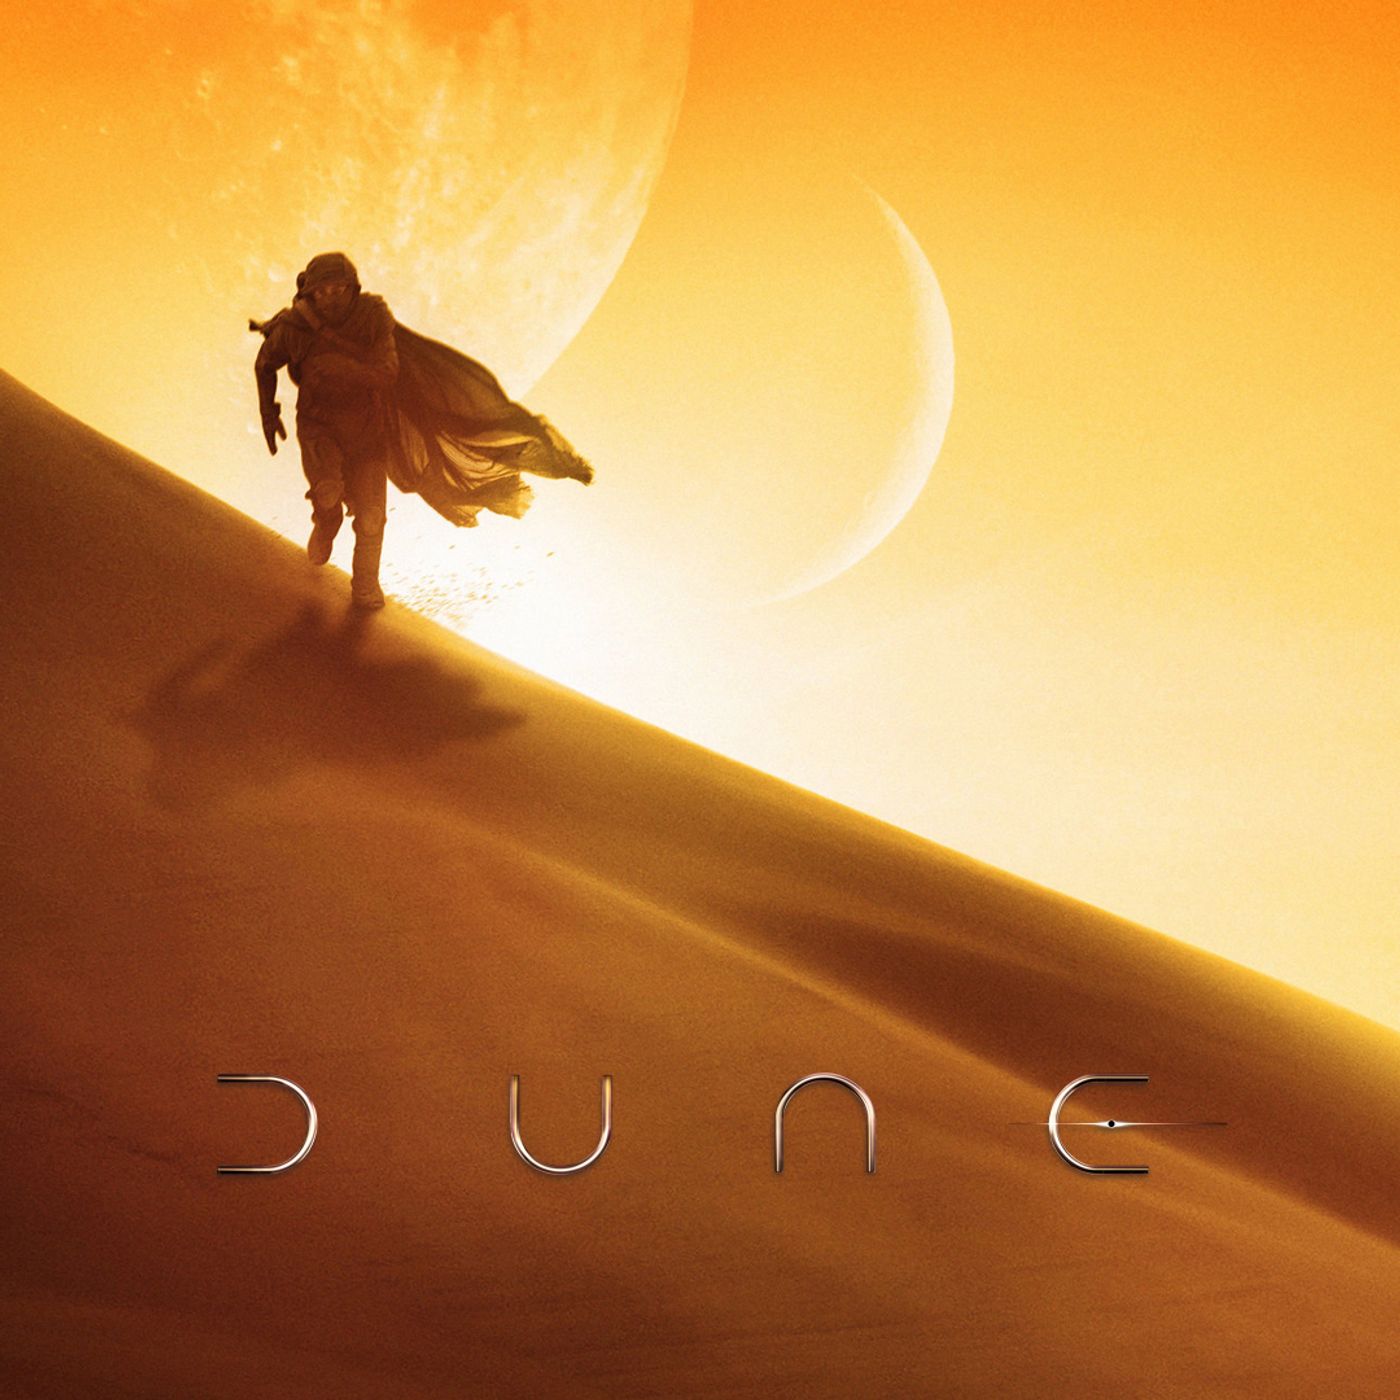 279: "Dune"